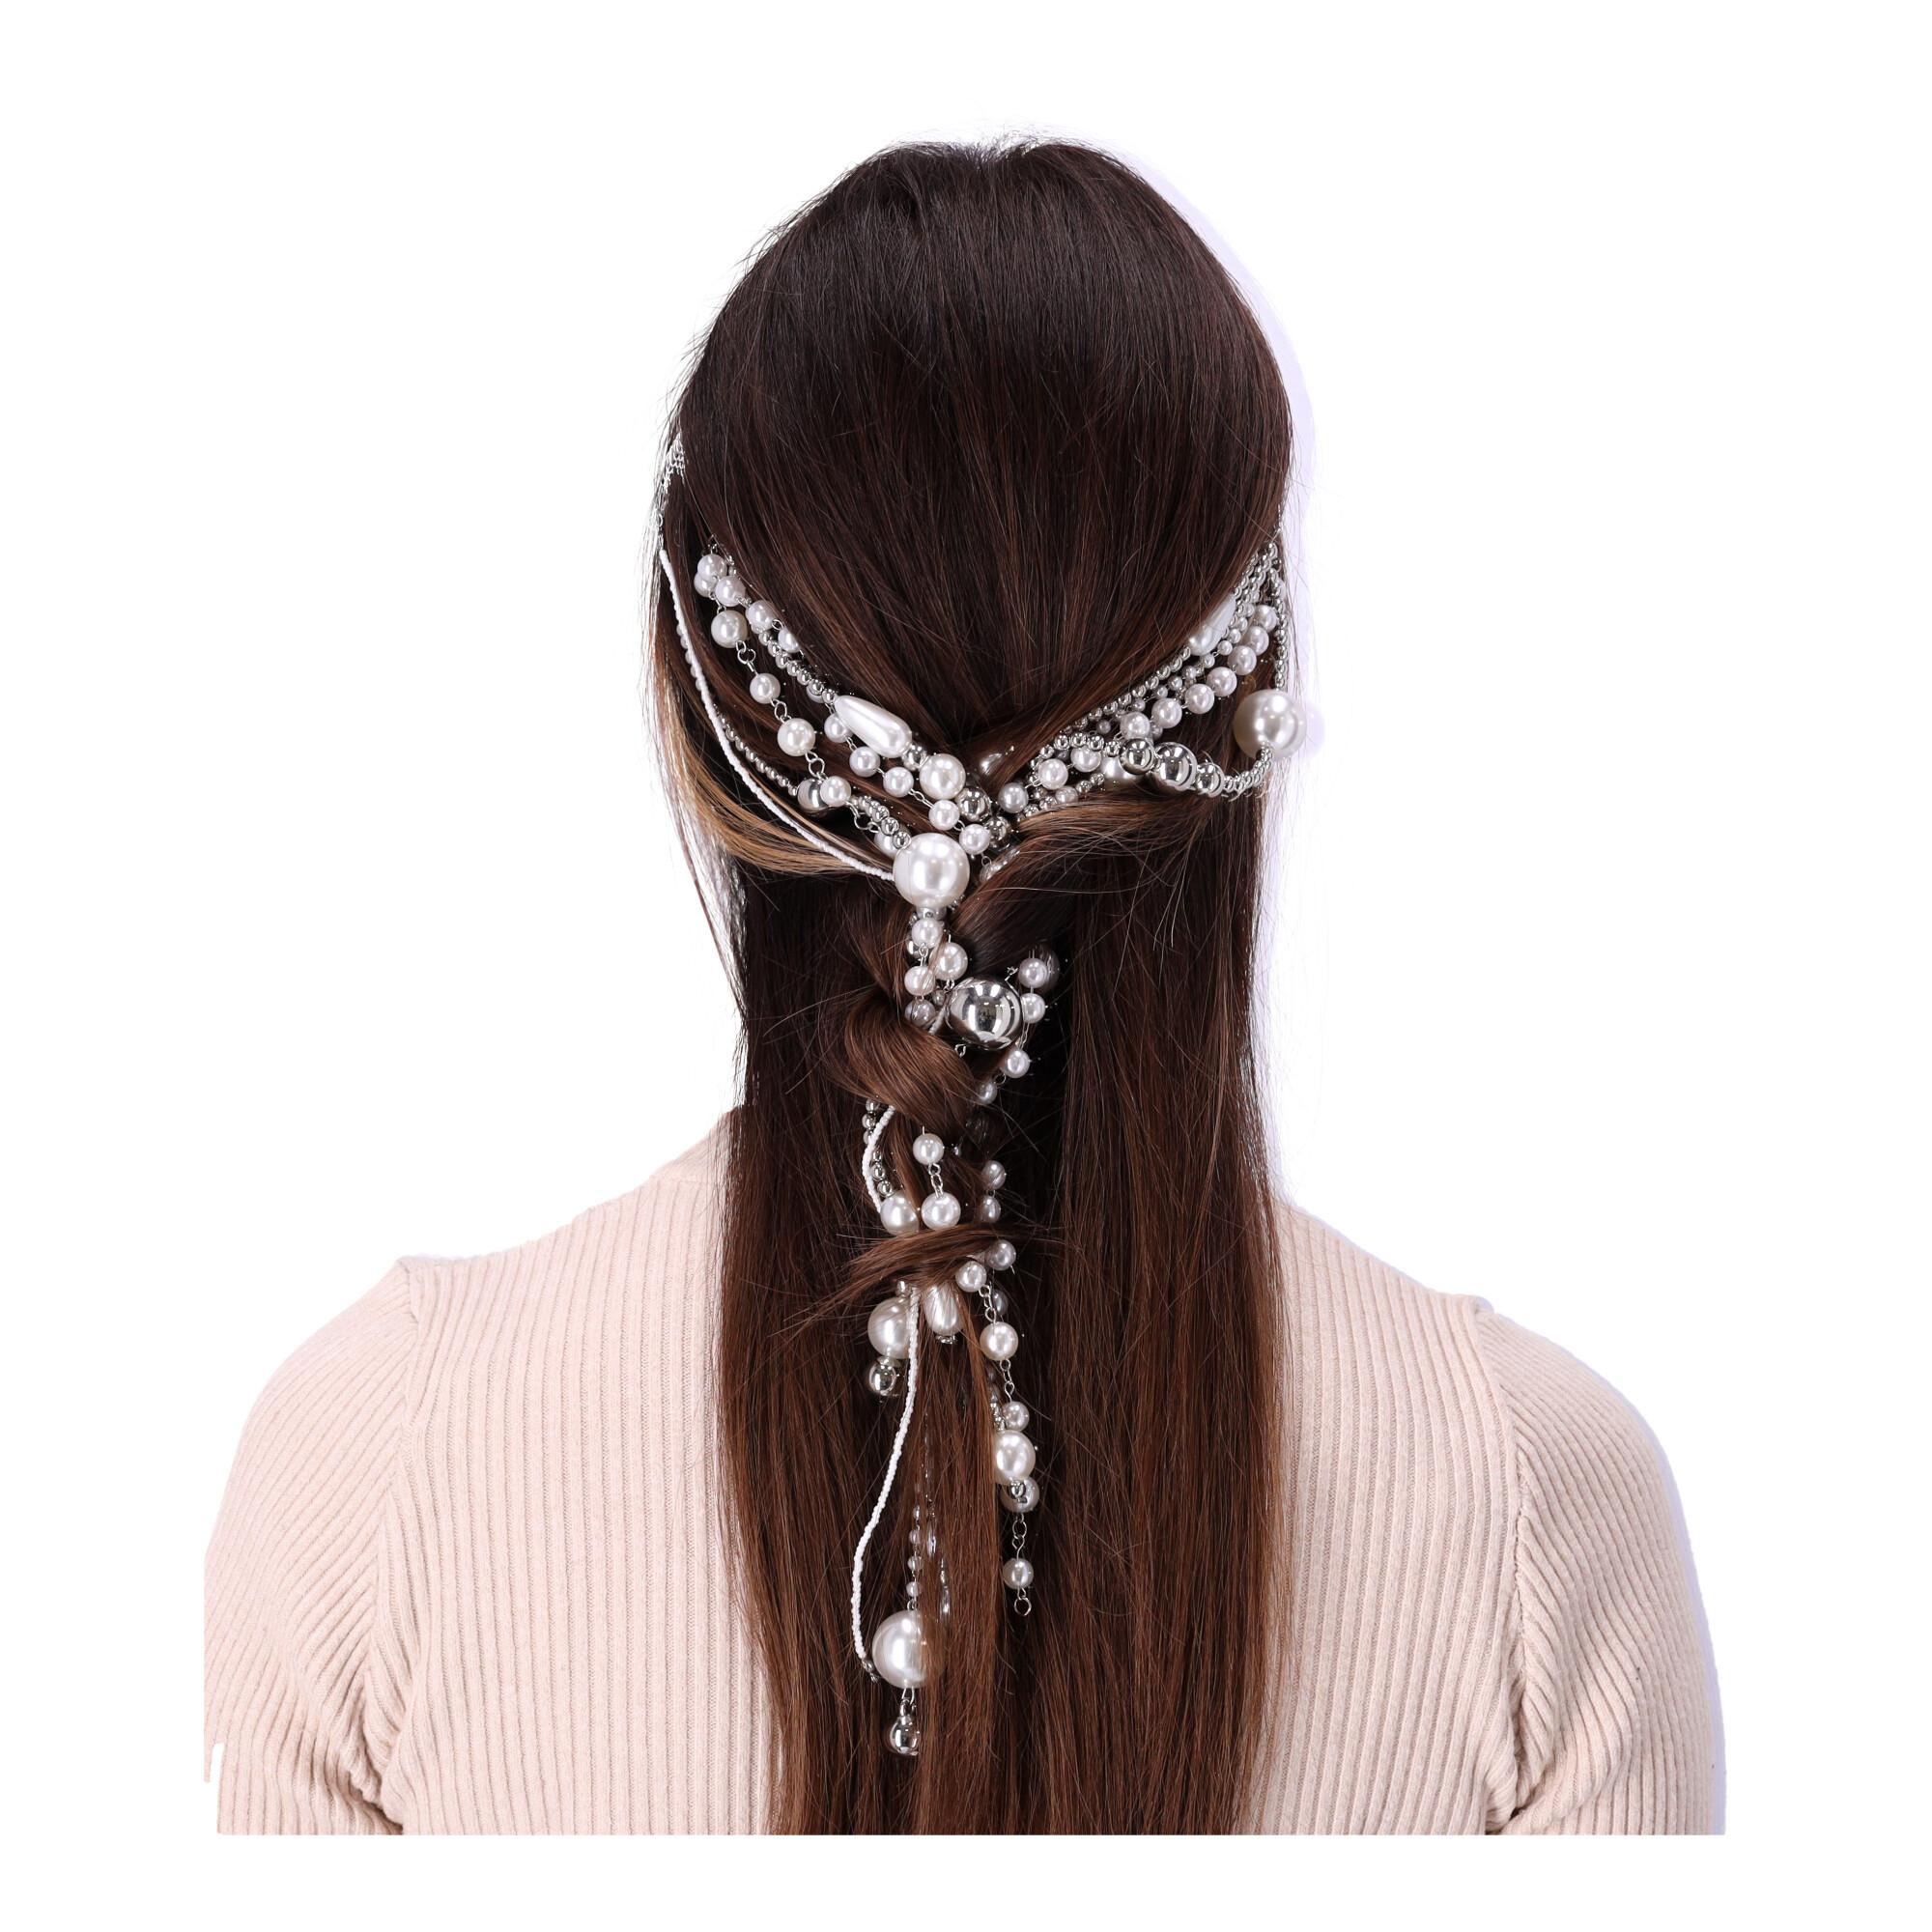 Ozdobna opaska do włosów z perełkami na łańcuszku - srebrna